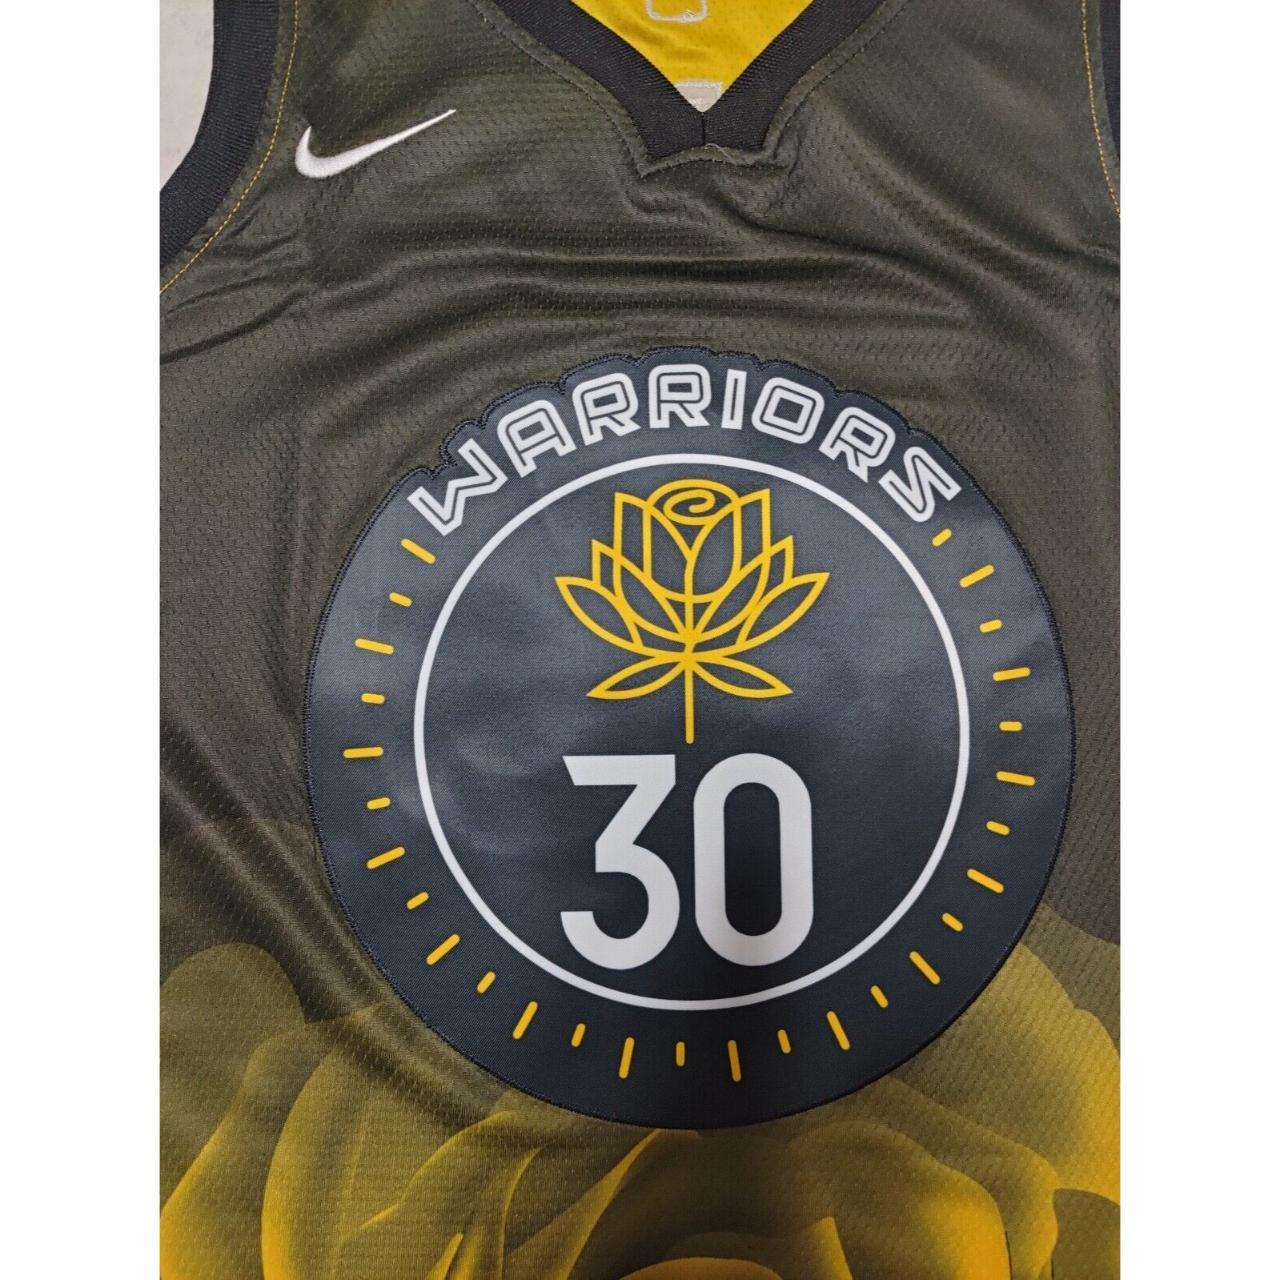 Steph Curry Golden State Warriors Jersey. Brand new, - Depop